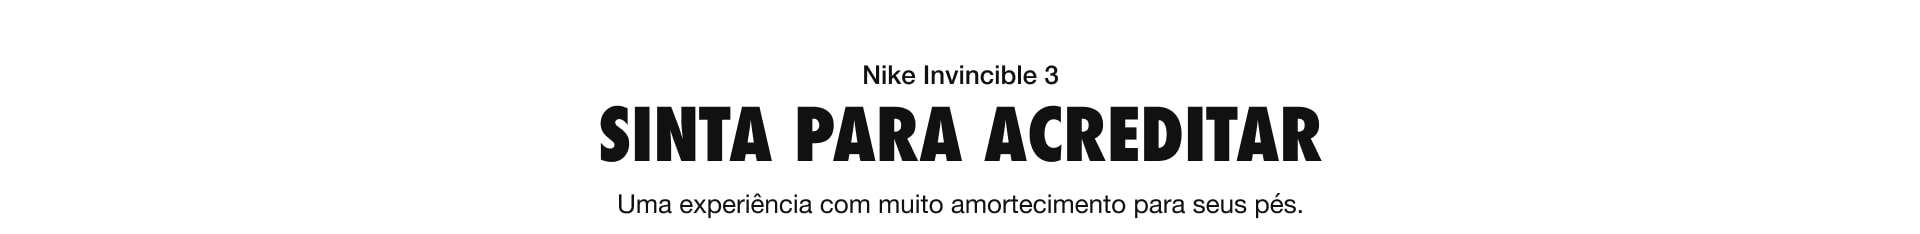 Nike Invinvible 3 - Sinta para acreditar - Uma experiência com muito amortecimento para seus pés.